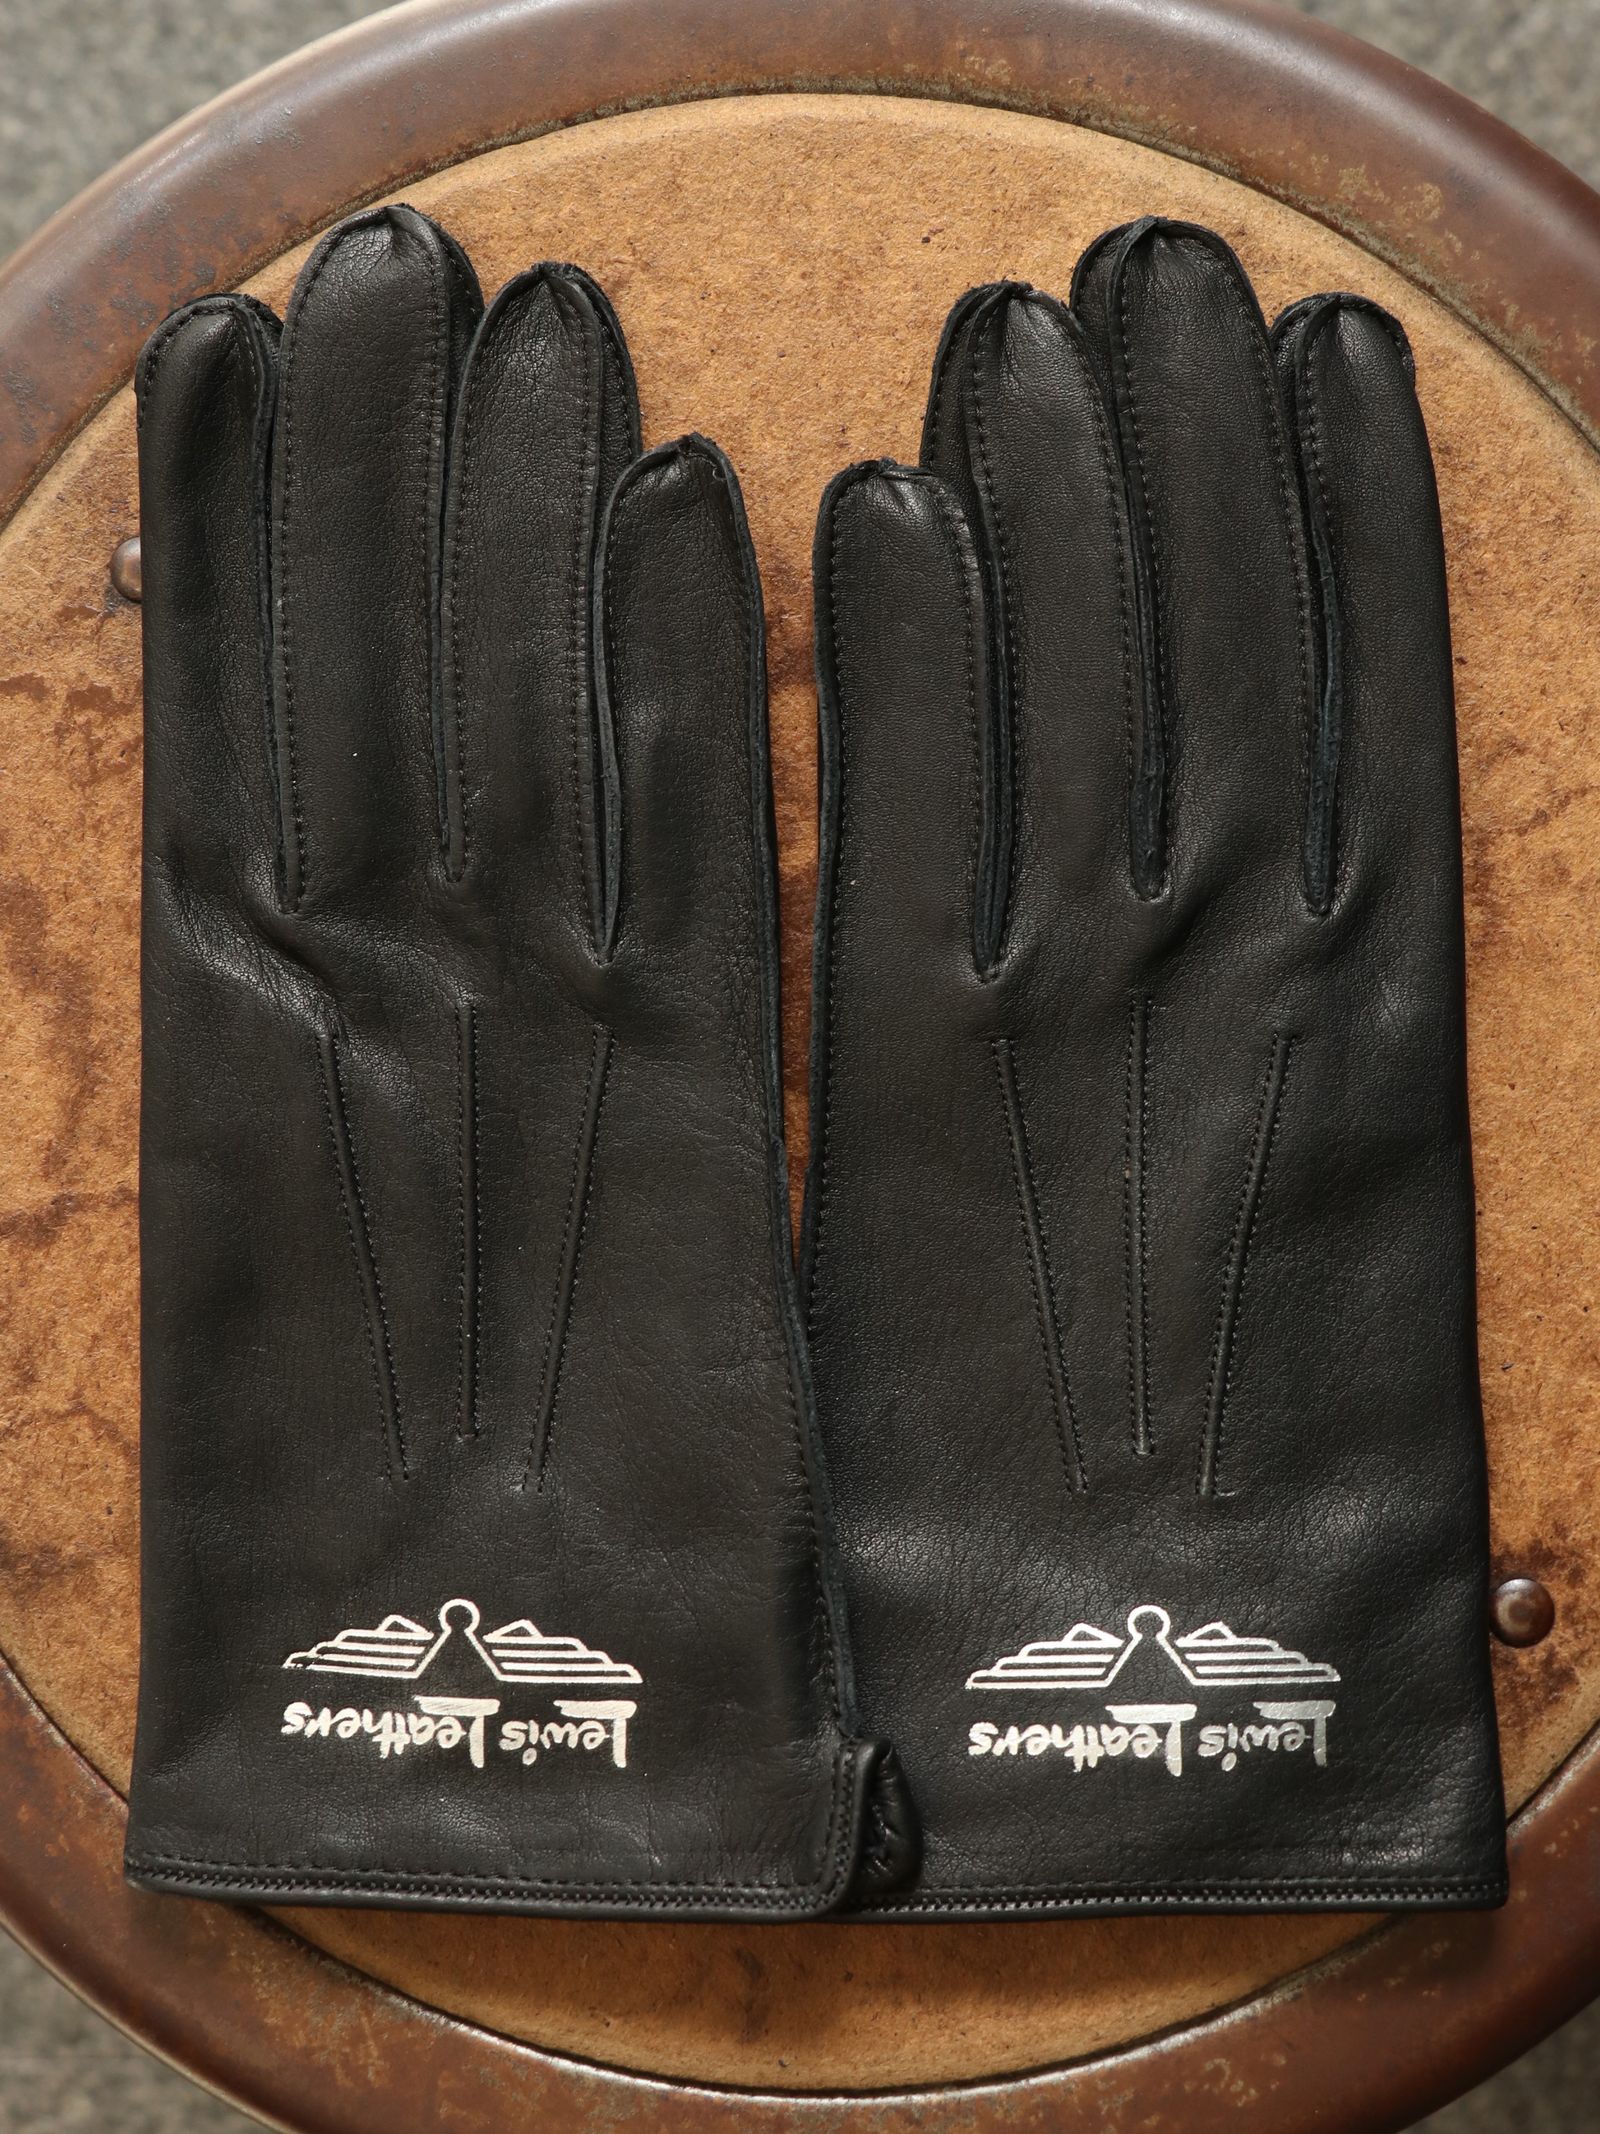 【即日発送可能】No.810 ストラップ グローブ (カウレザー) / No.810 Strap Gloves (COW LATHER) - XS